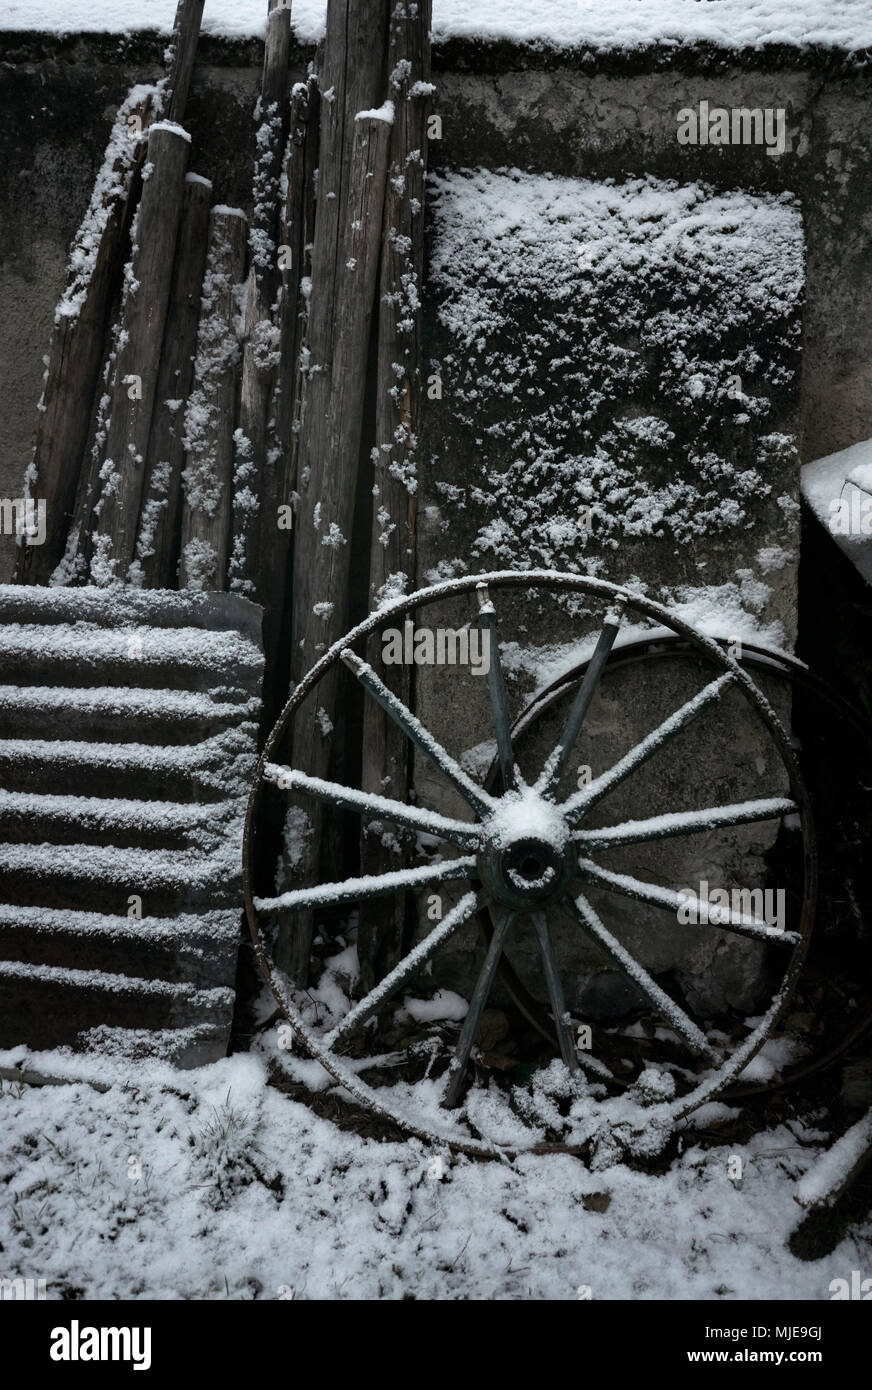 La roue, de la tôle ondulée et de bois sur un mur dans une ferme avec de la neige Banque D'Images